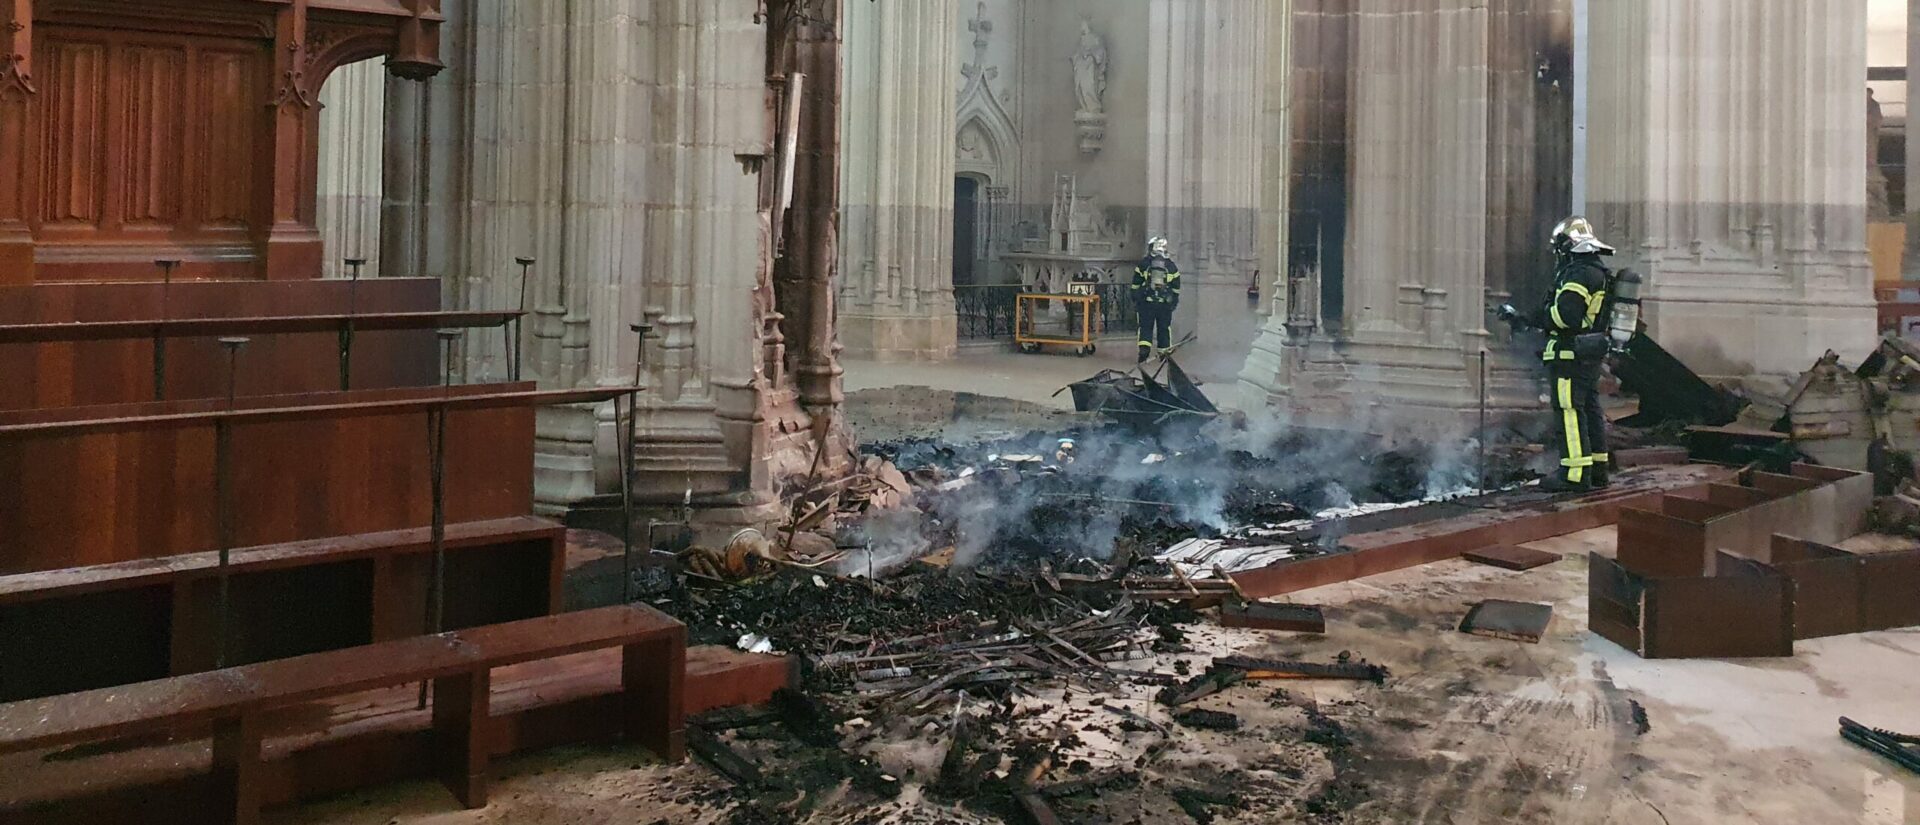 L'incendie a fait de gros dégâts à l'intérieur de la cathédrale de Nantes | © Diocèse de Nantes